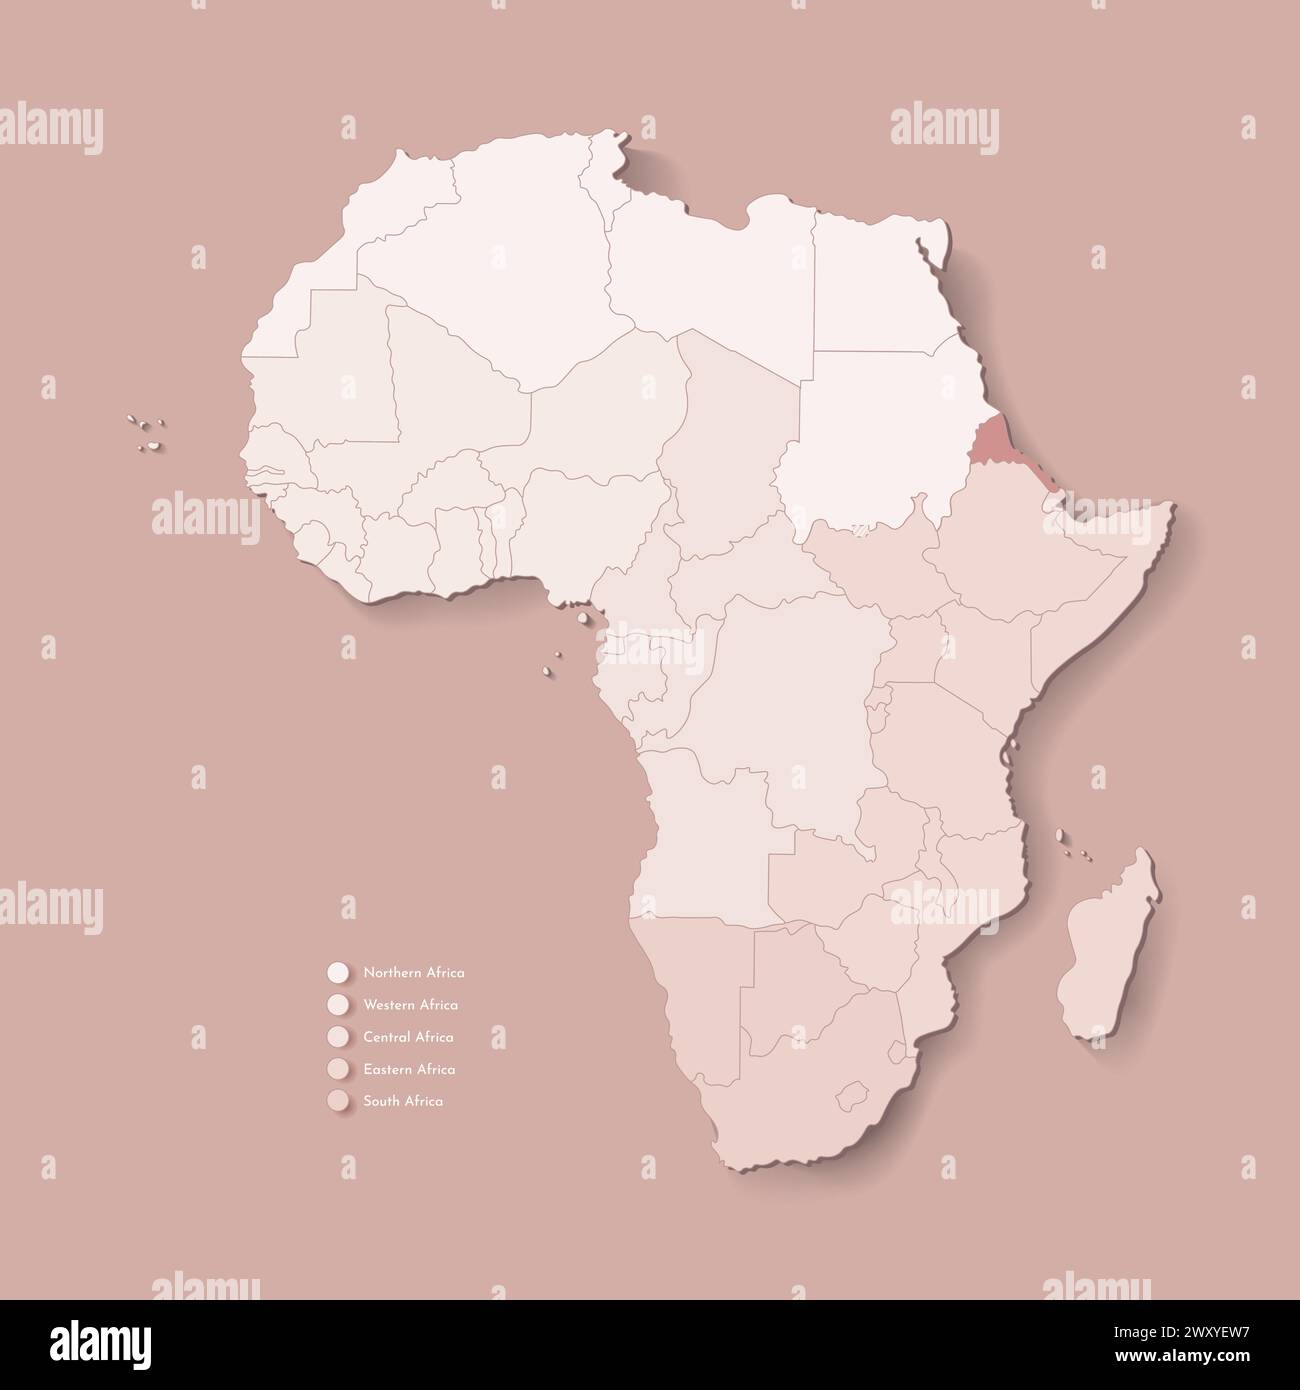 Illustrazione vettoriale con continente africano con confini di tutti gli stati e paese marcato Eritrea. Mappa politica in colori marroni con occidentale, sud AN Illustrazione Vettoriale